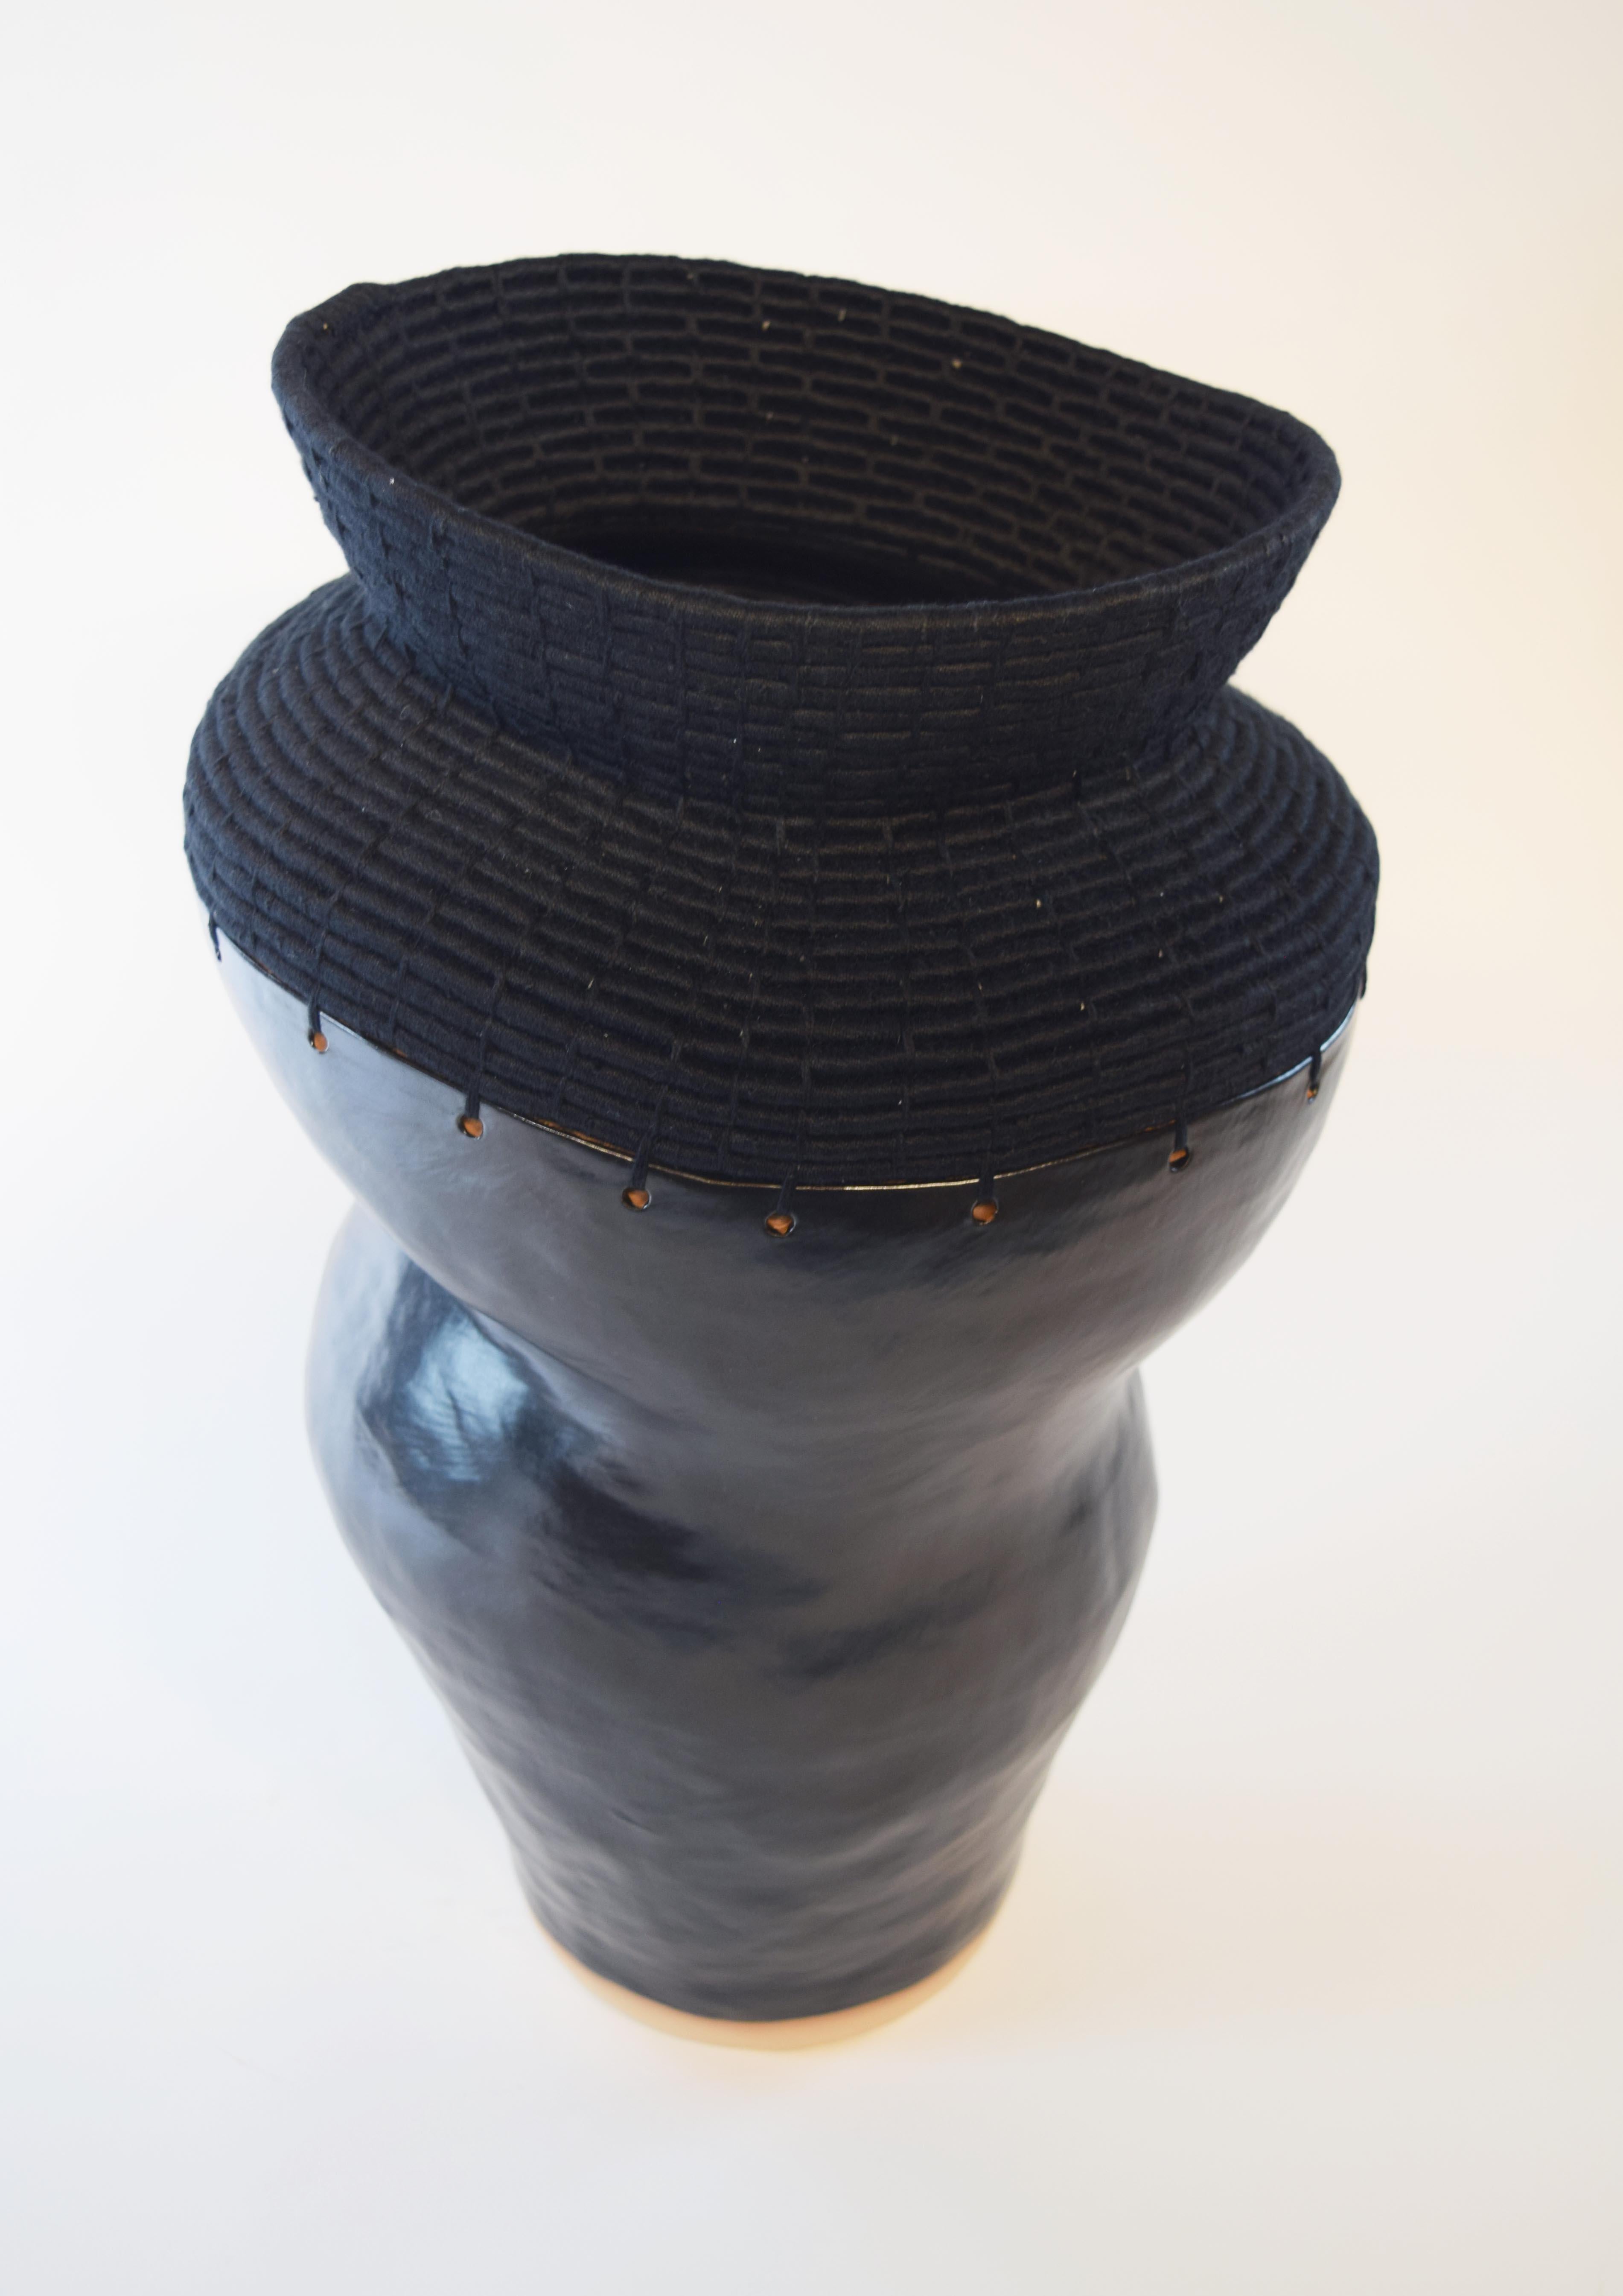 Américain Vase unique en céramique et fibre tissée #762, glaçure noire satinée, coton noir en vente